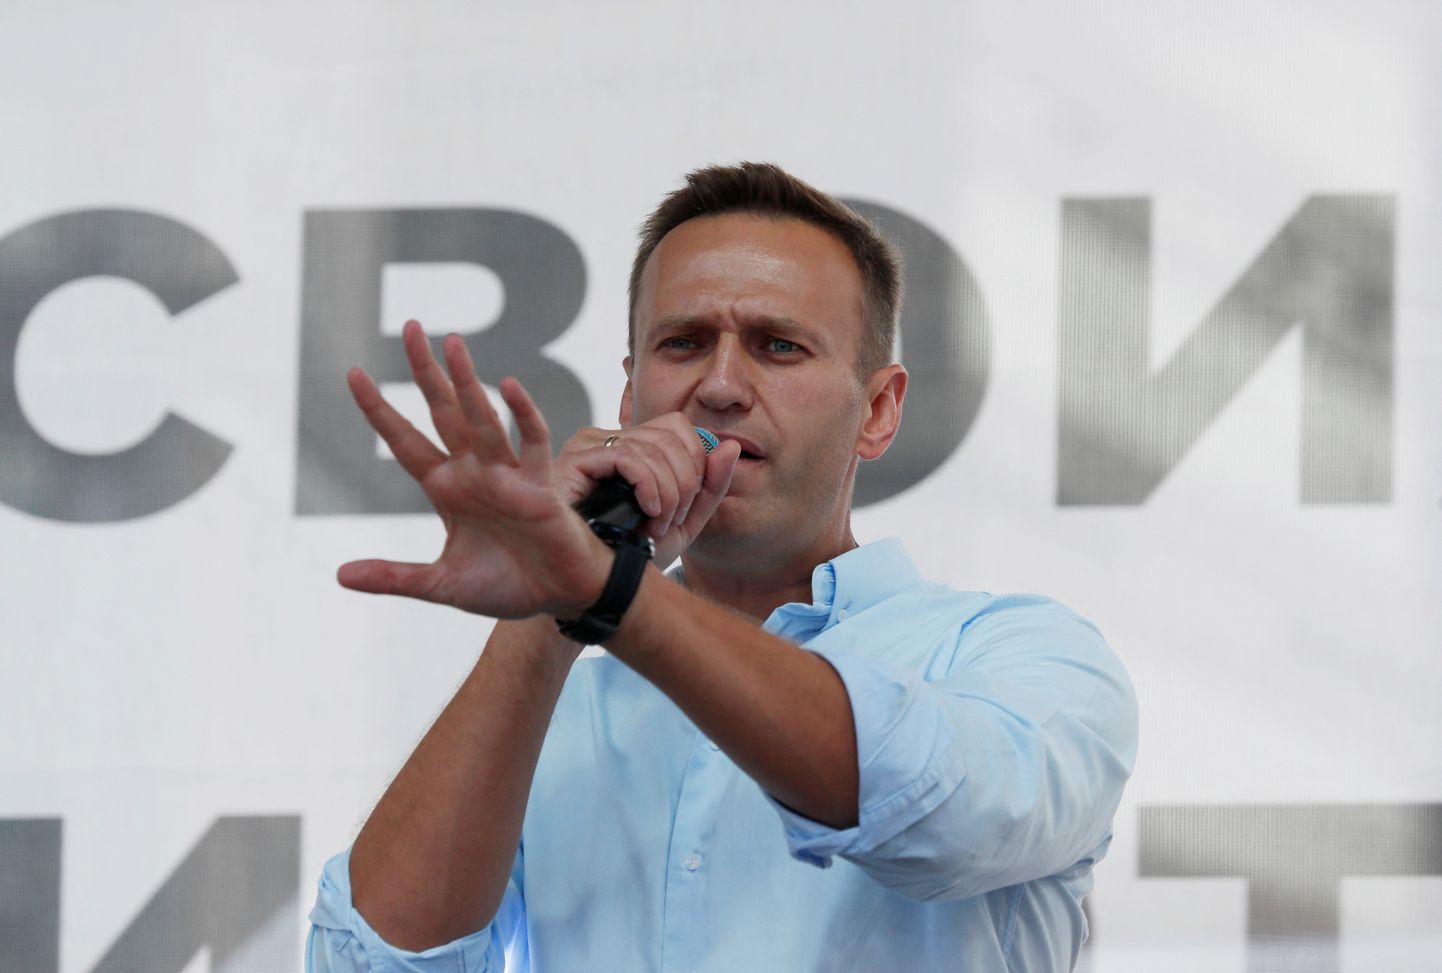 Venemaa opsitsioonijuht Aleksei Navalnõi 2019. aastal.